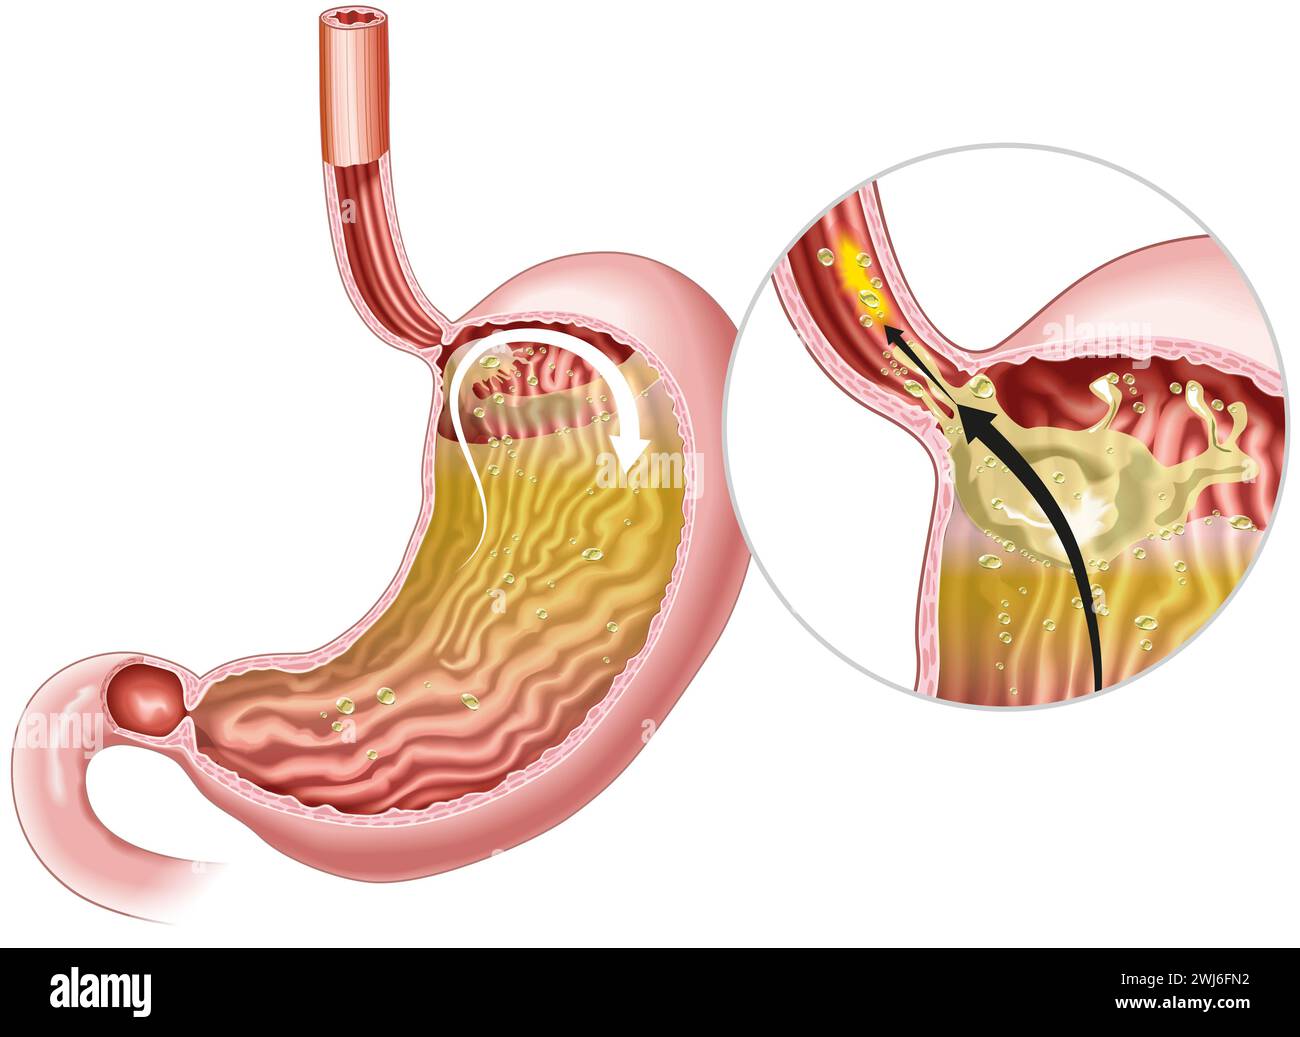 Illustrazione che mostra la malattia da reflusso gastrofageo (GERD) è un disturbo digestivo in cui l'acido dello stomaco rifluisce nell'esofago, causando disagio Foto Stock